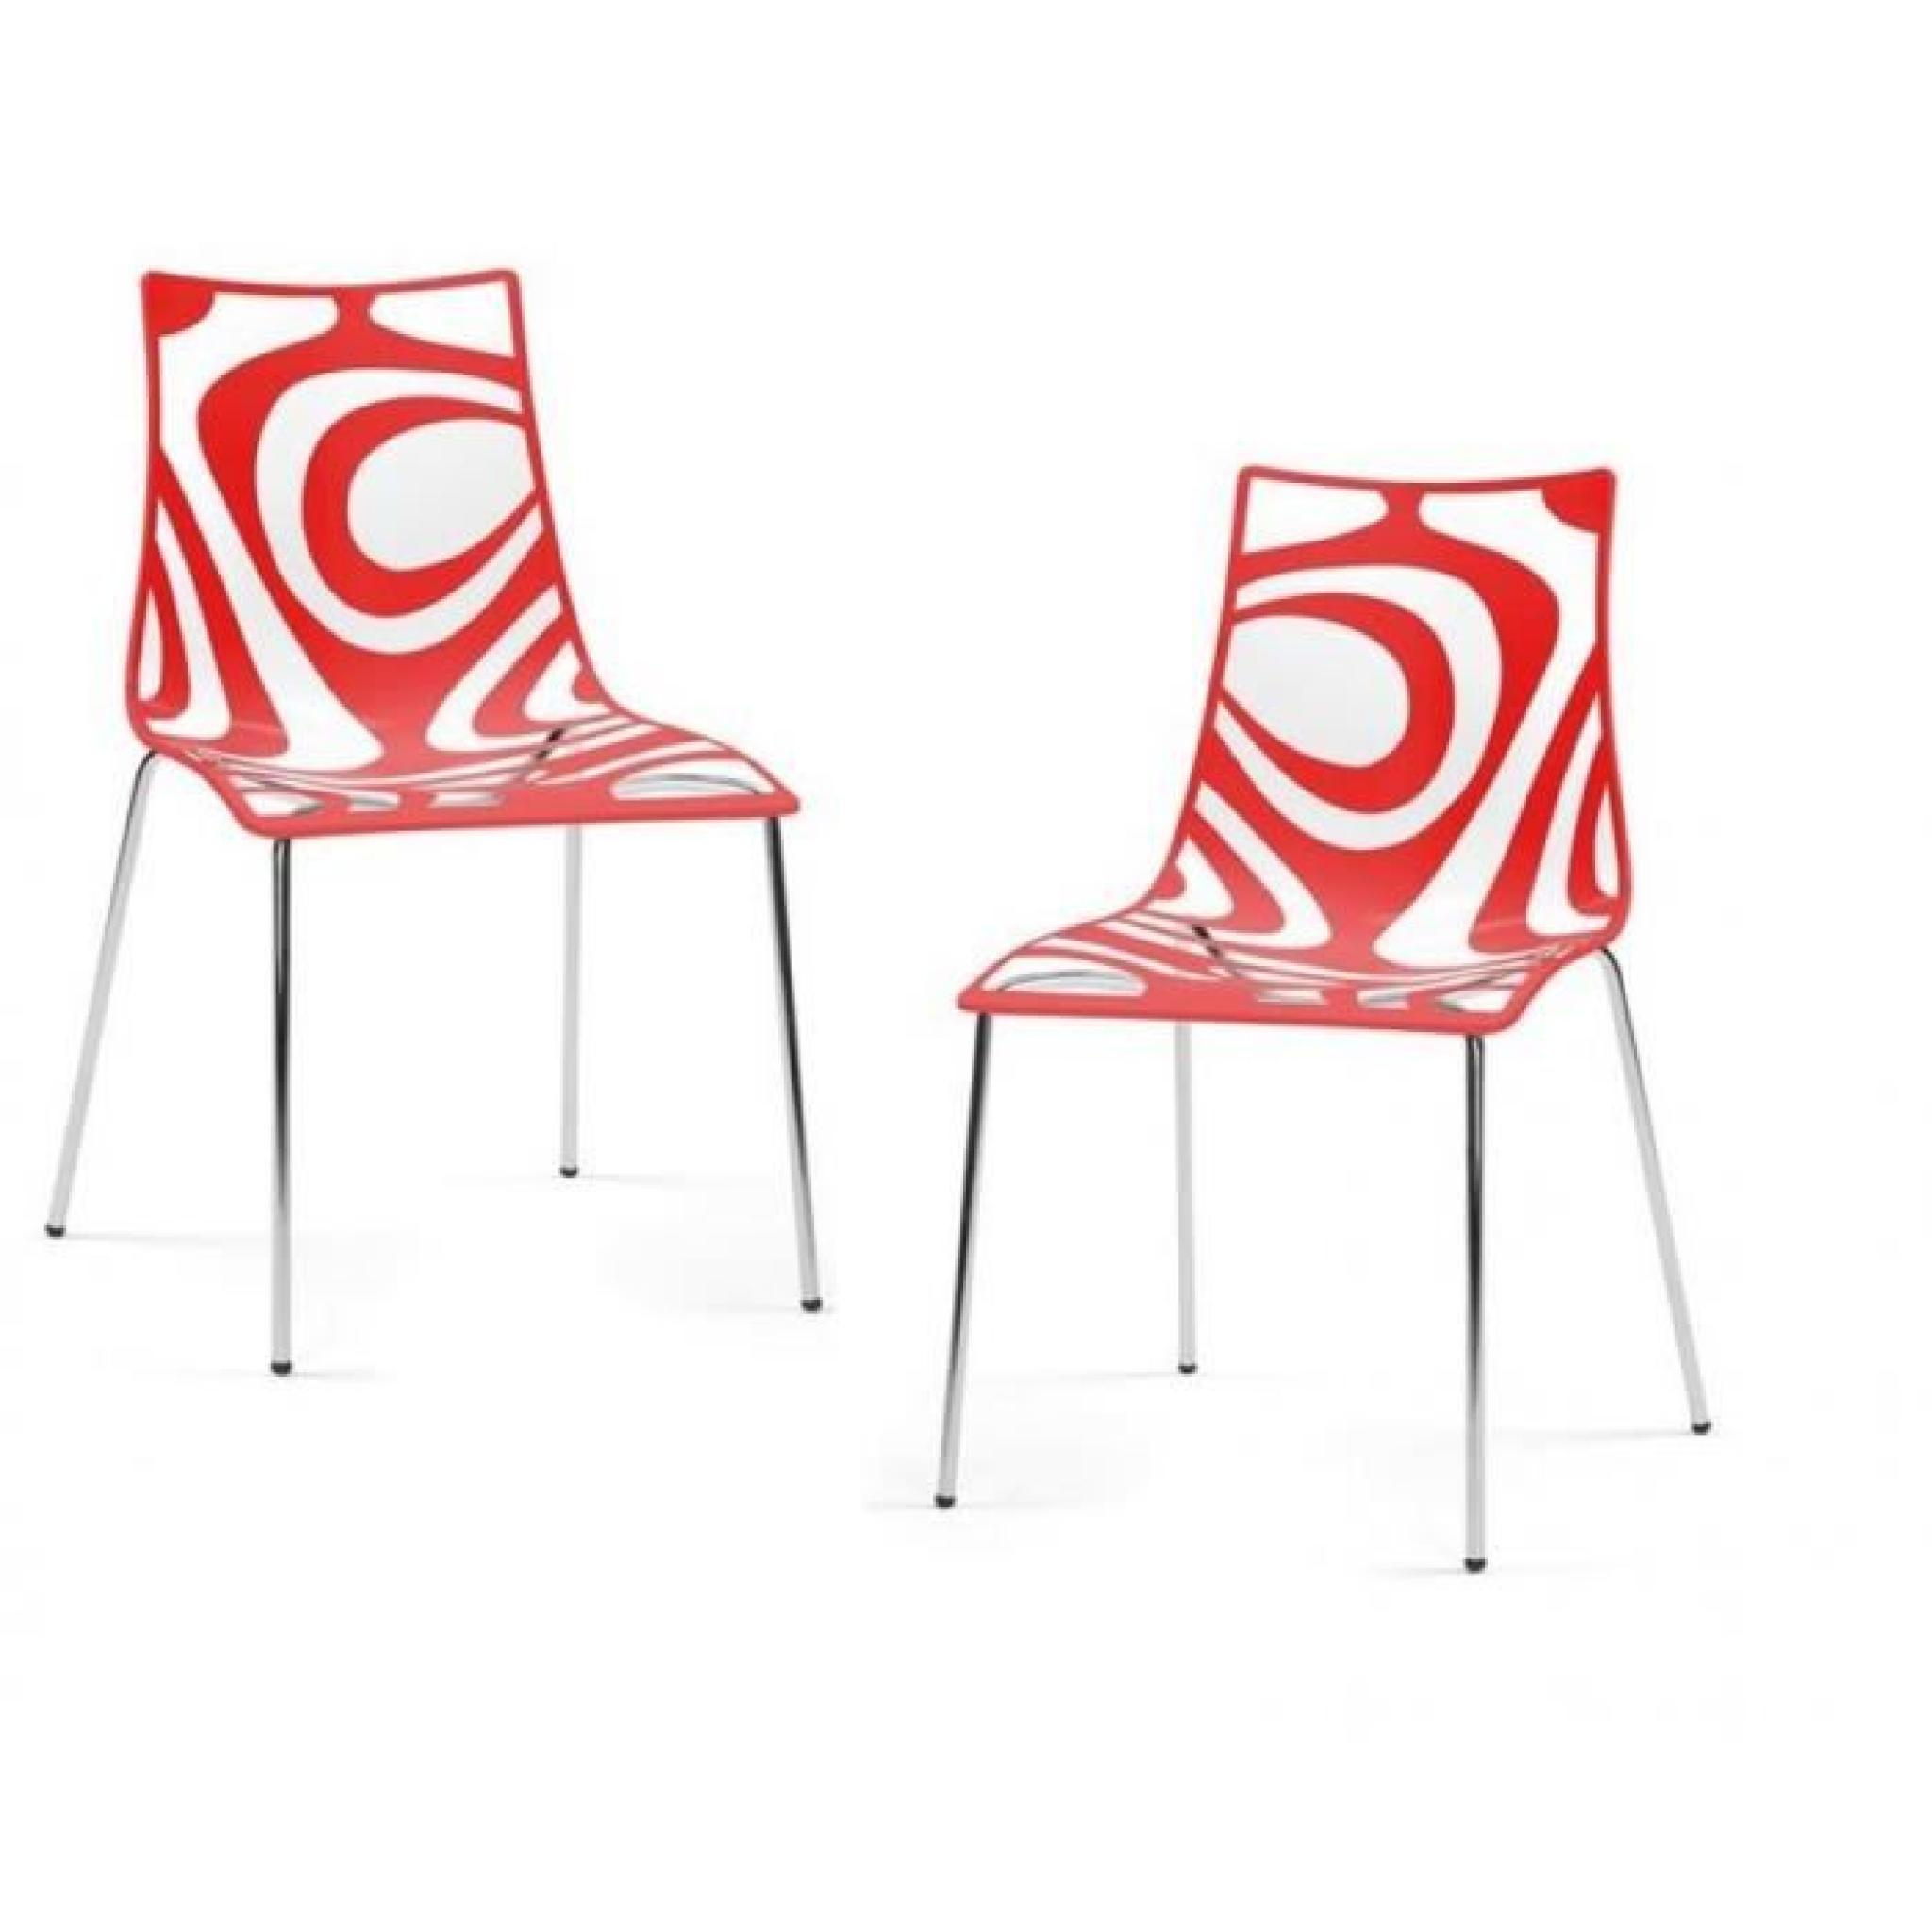 Cette chaiseTRIBAL apportera une atmosphère tendance et colorée dans votre salon ou bien encore dans votre cuisine.  Ses formes l...